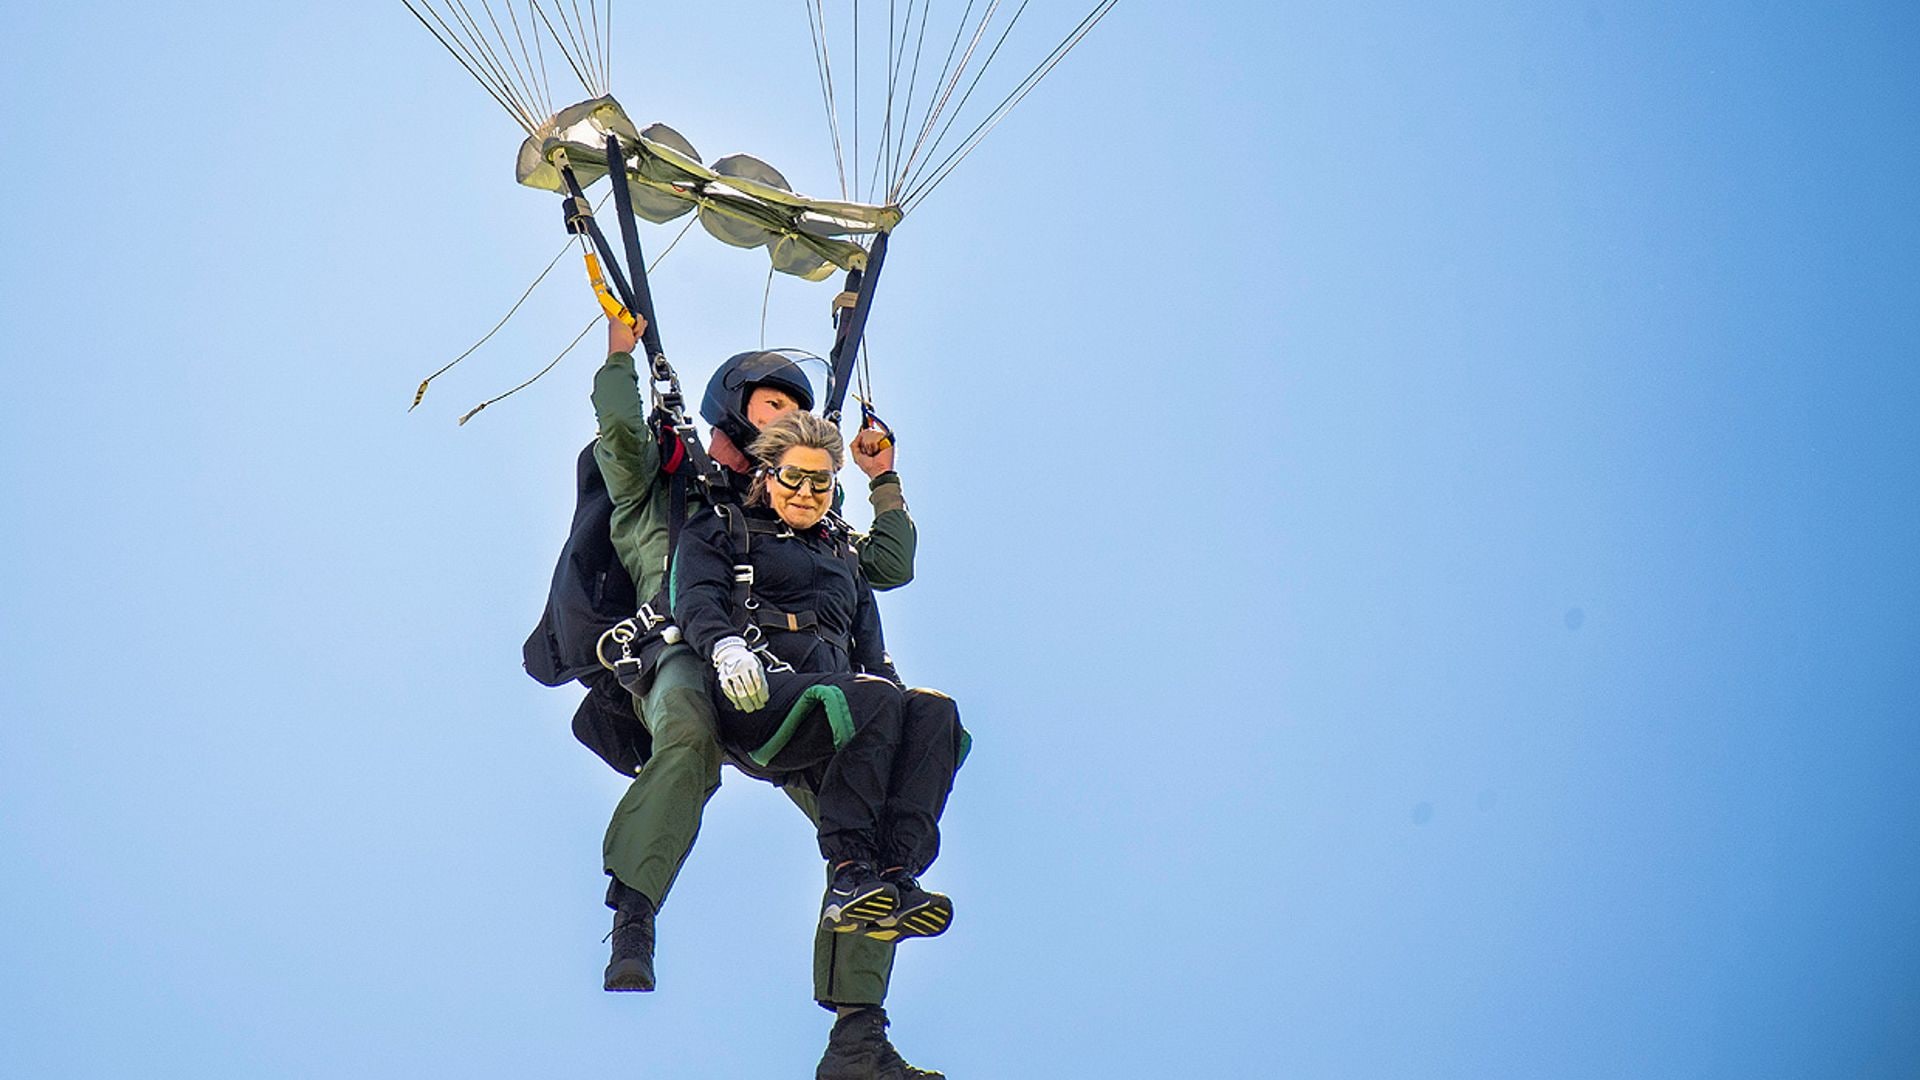 Máxima de los Países Bajos sorprende con su lado más aventurero ¡y se lanza en paracaídas!